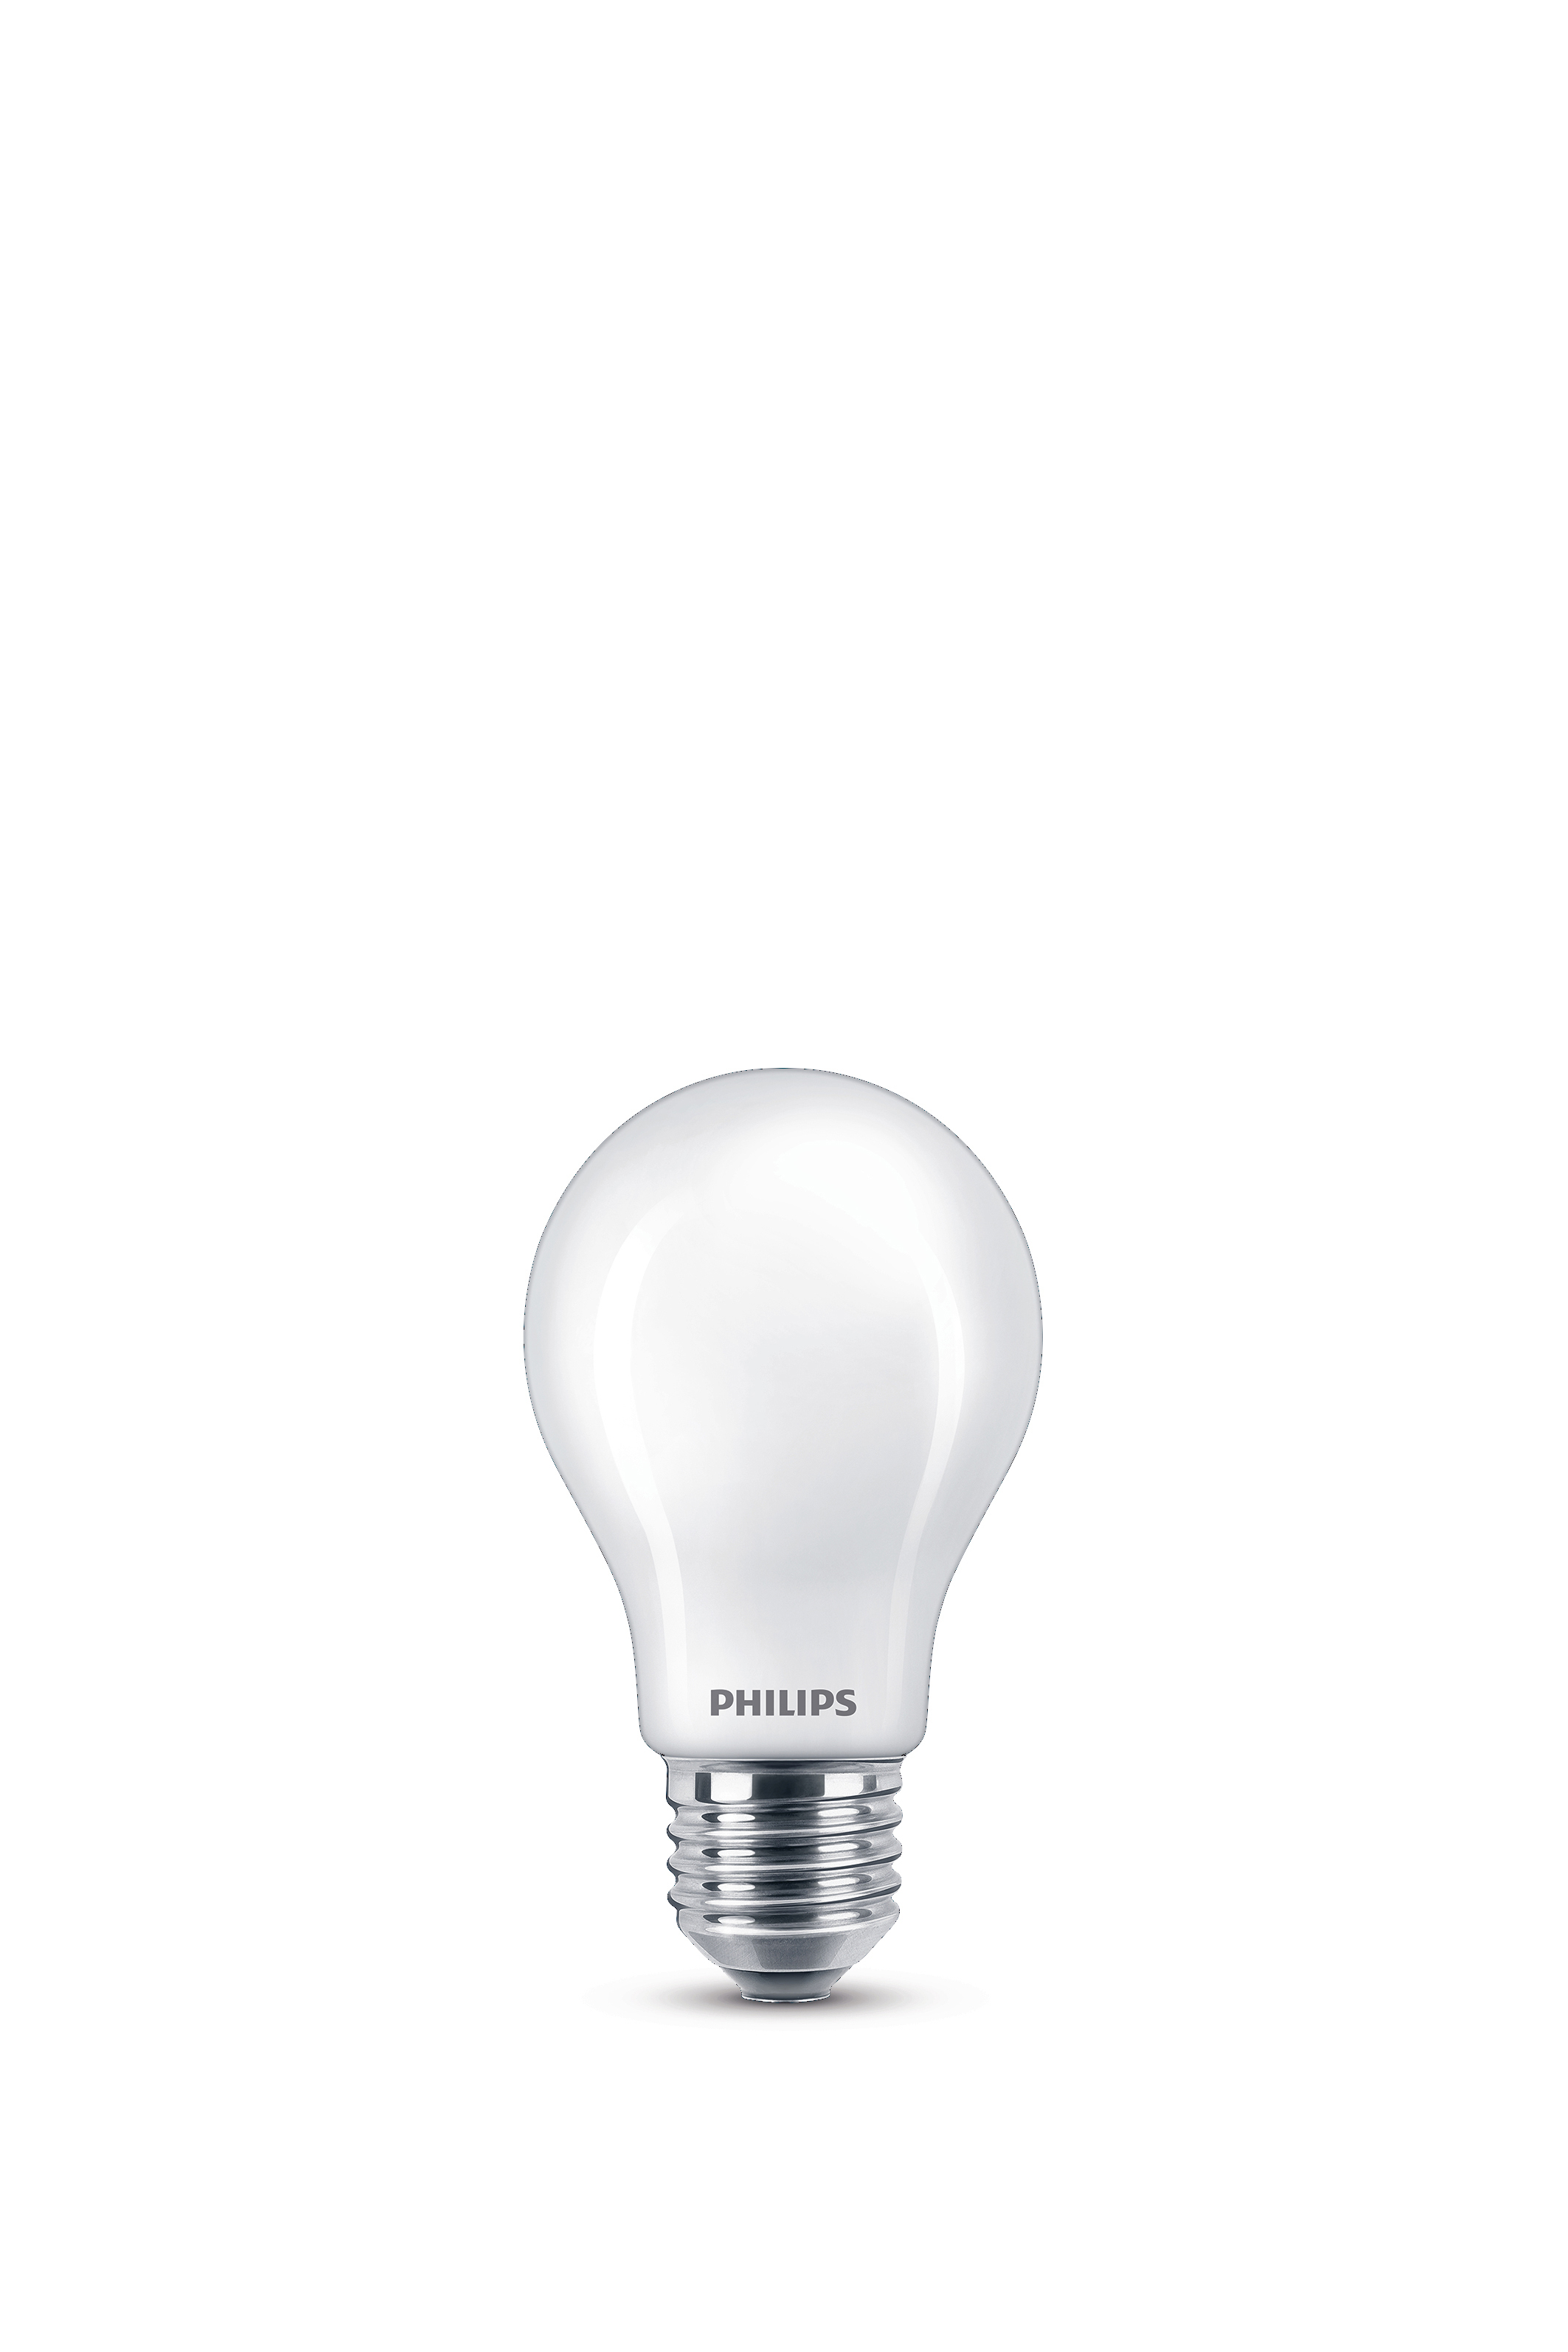 LEDclassic warmweiß Lampe PHILIPS 175W Lampe LED ersetzt